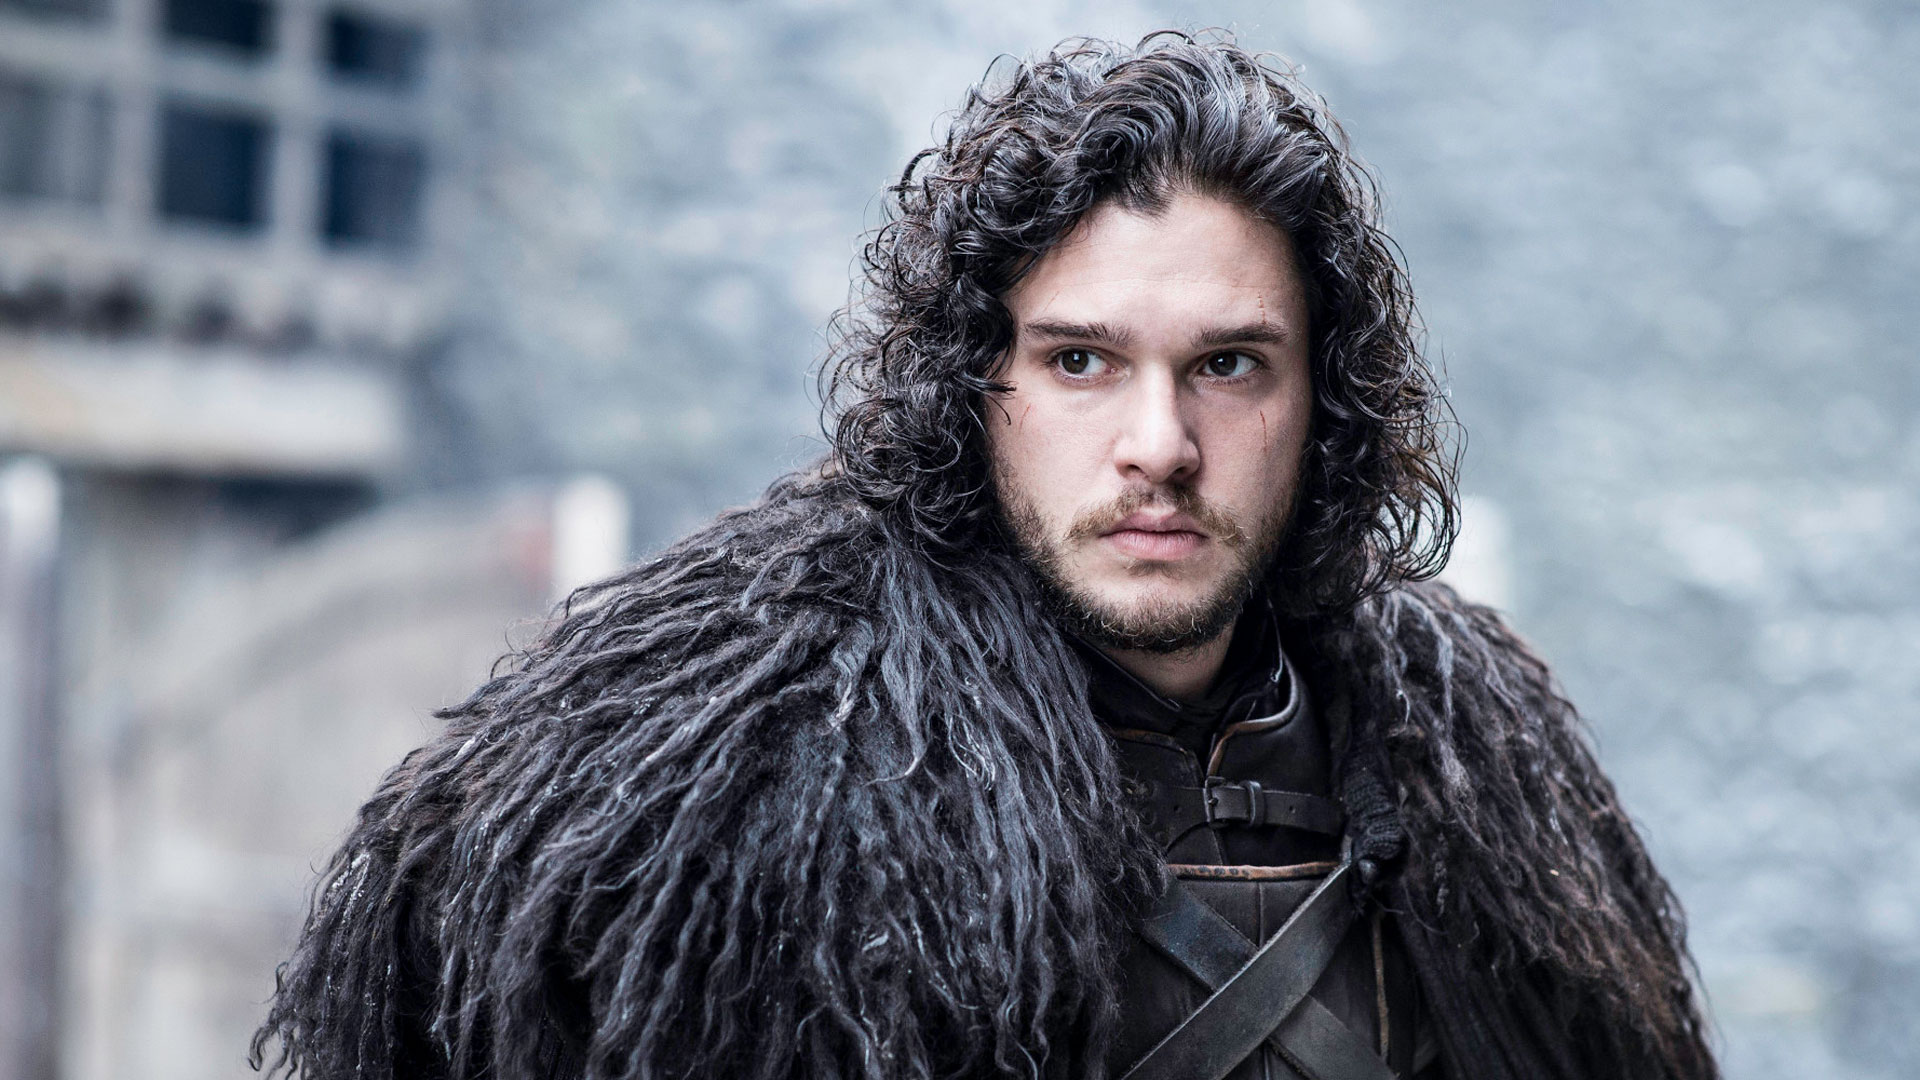 El actor retomará este rol para una especie de continuación ambientada luego del final de "Game of Thrones". (HBO)